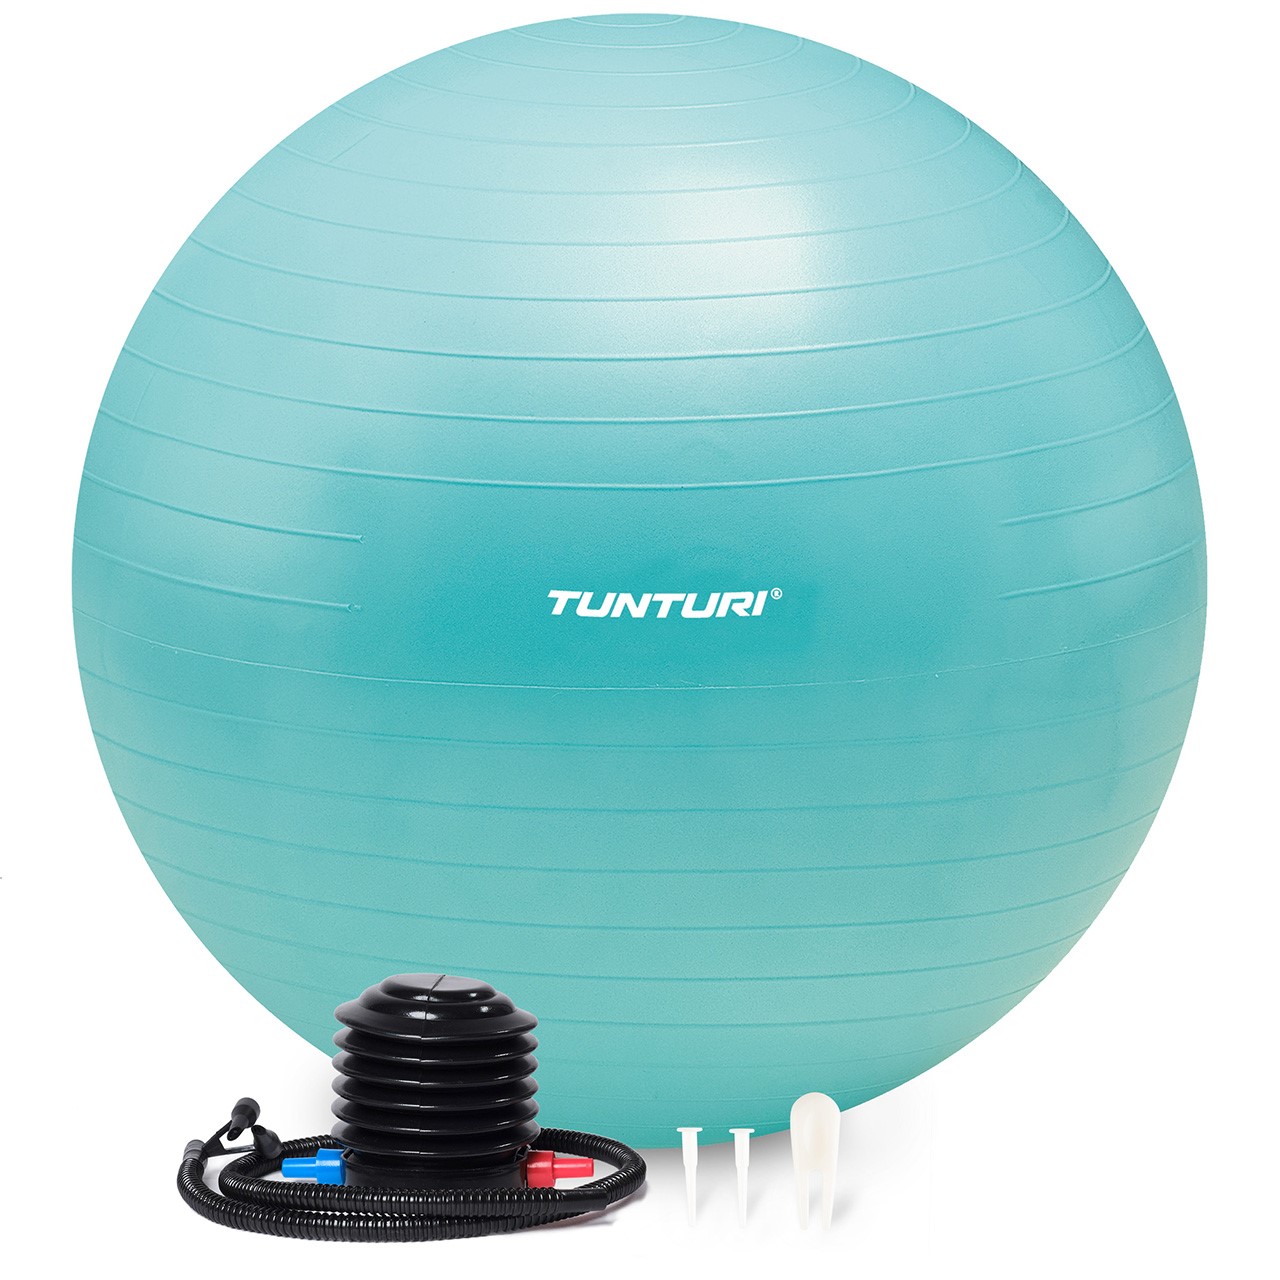 Tunturi Gym Ball - Anti Burst ABS 65 cm turquoise